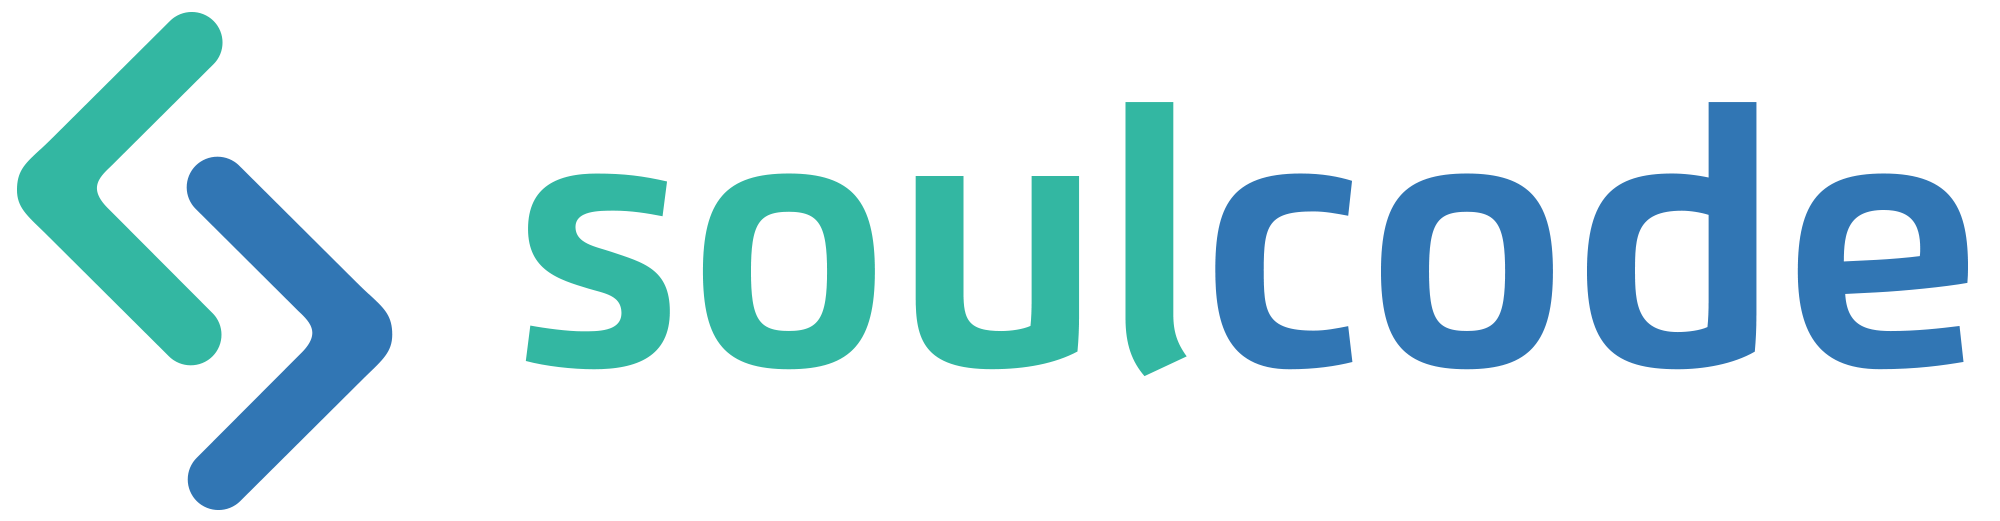 Soulcode logo